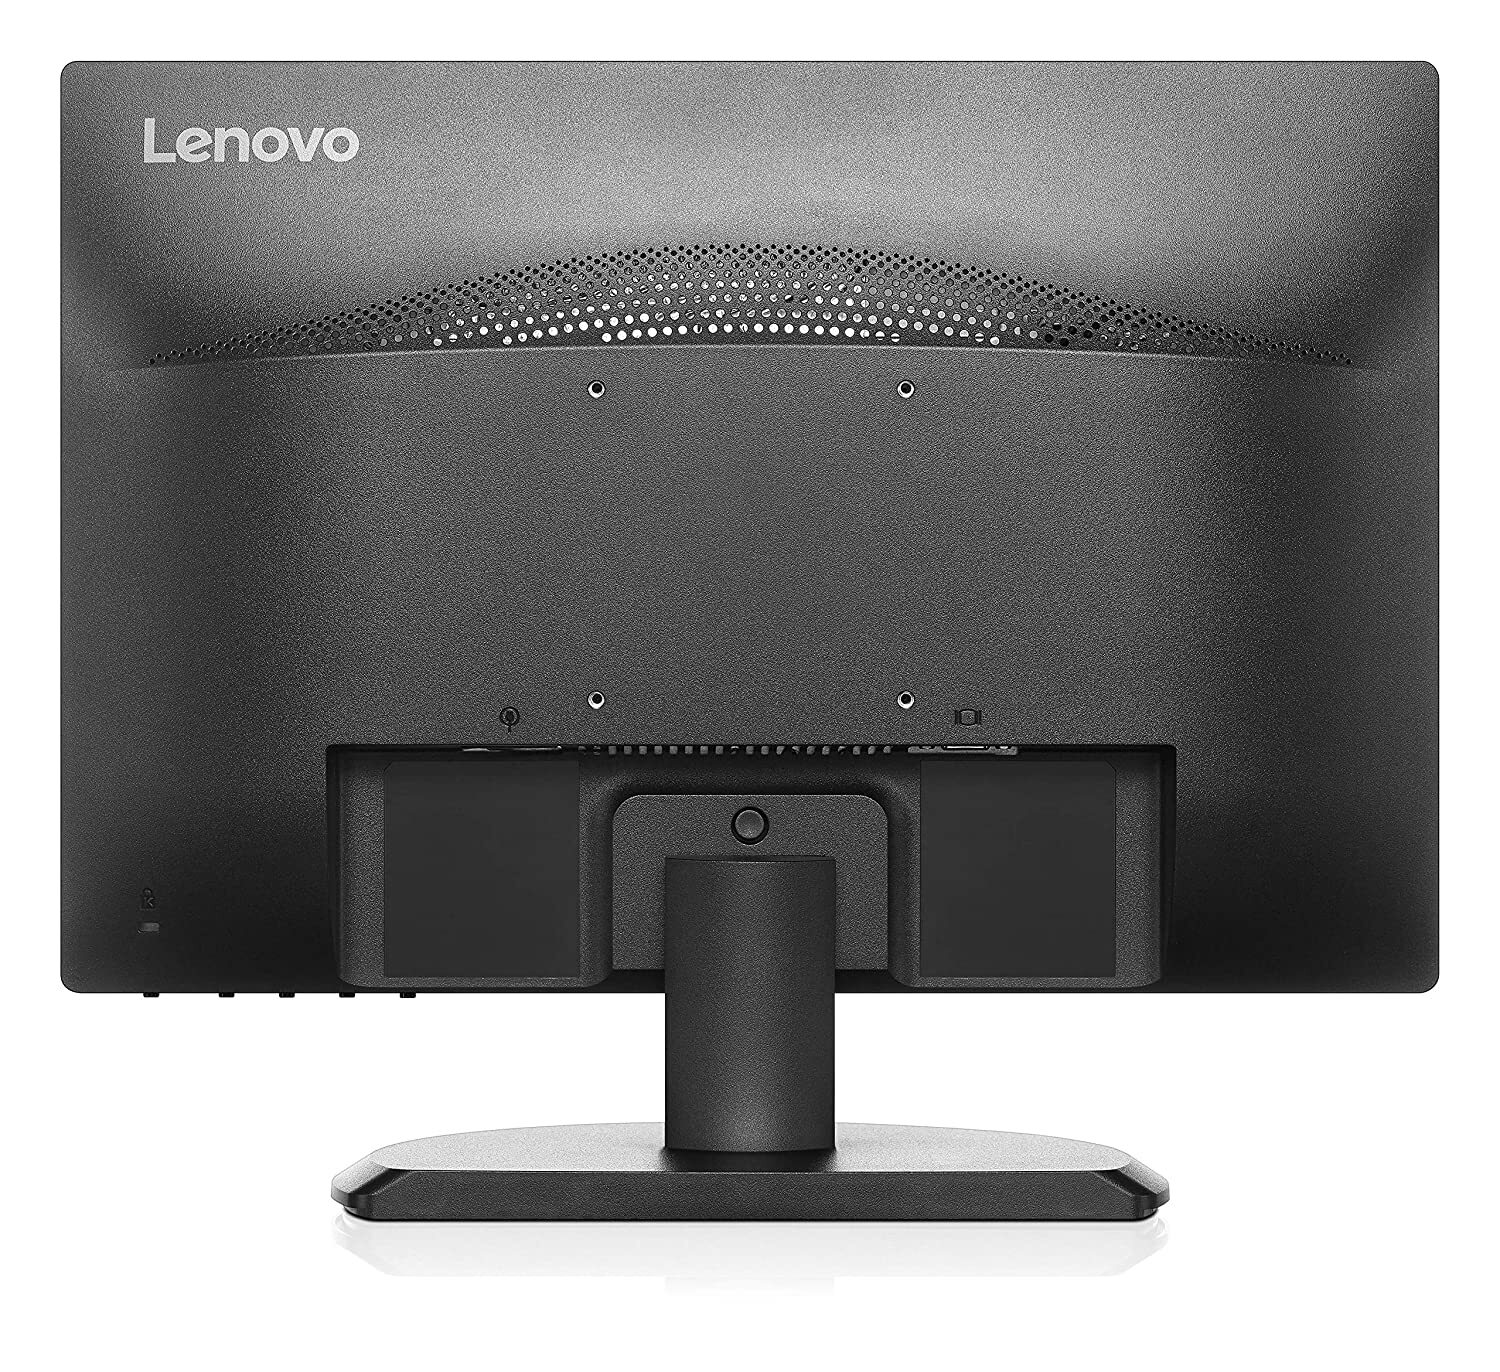 Lenovo Desktop V530s 11BLS06G00 Core i3-9100 processor, 4GB RAM, 1TB HDD,No DVD, DOS OS with Monitor size 19.5"-M000000000371 www.mysocially.com